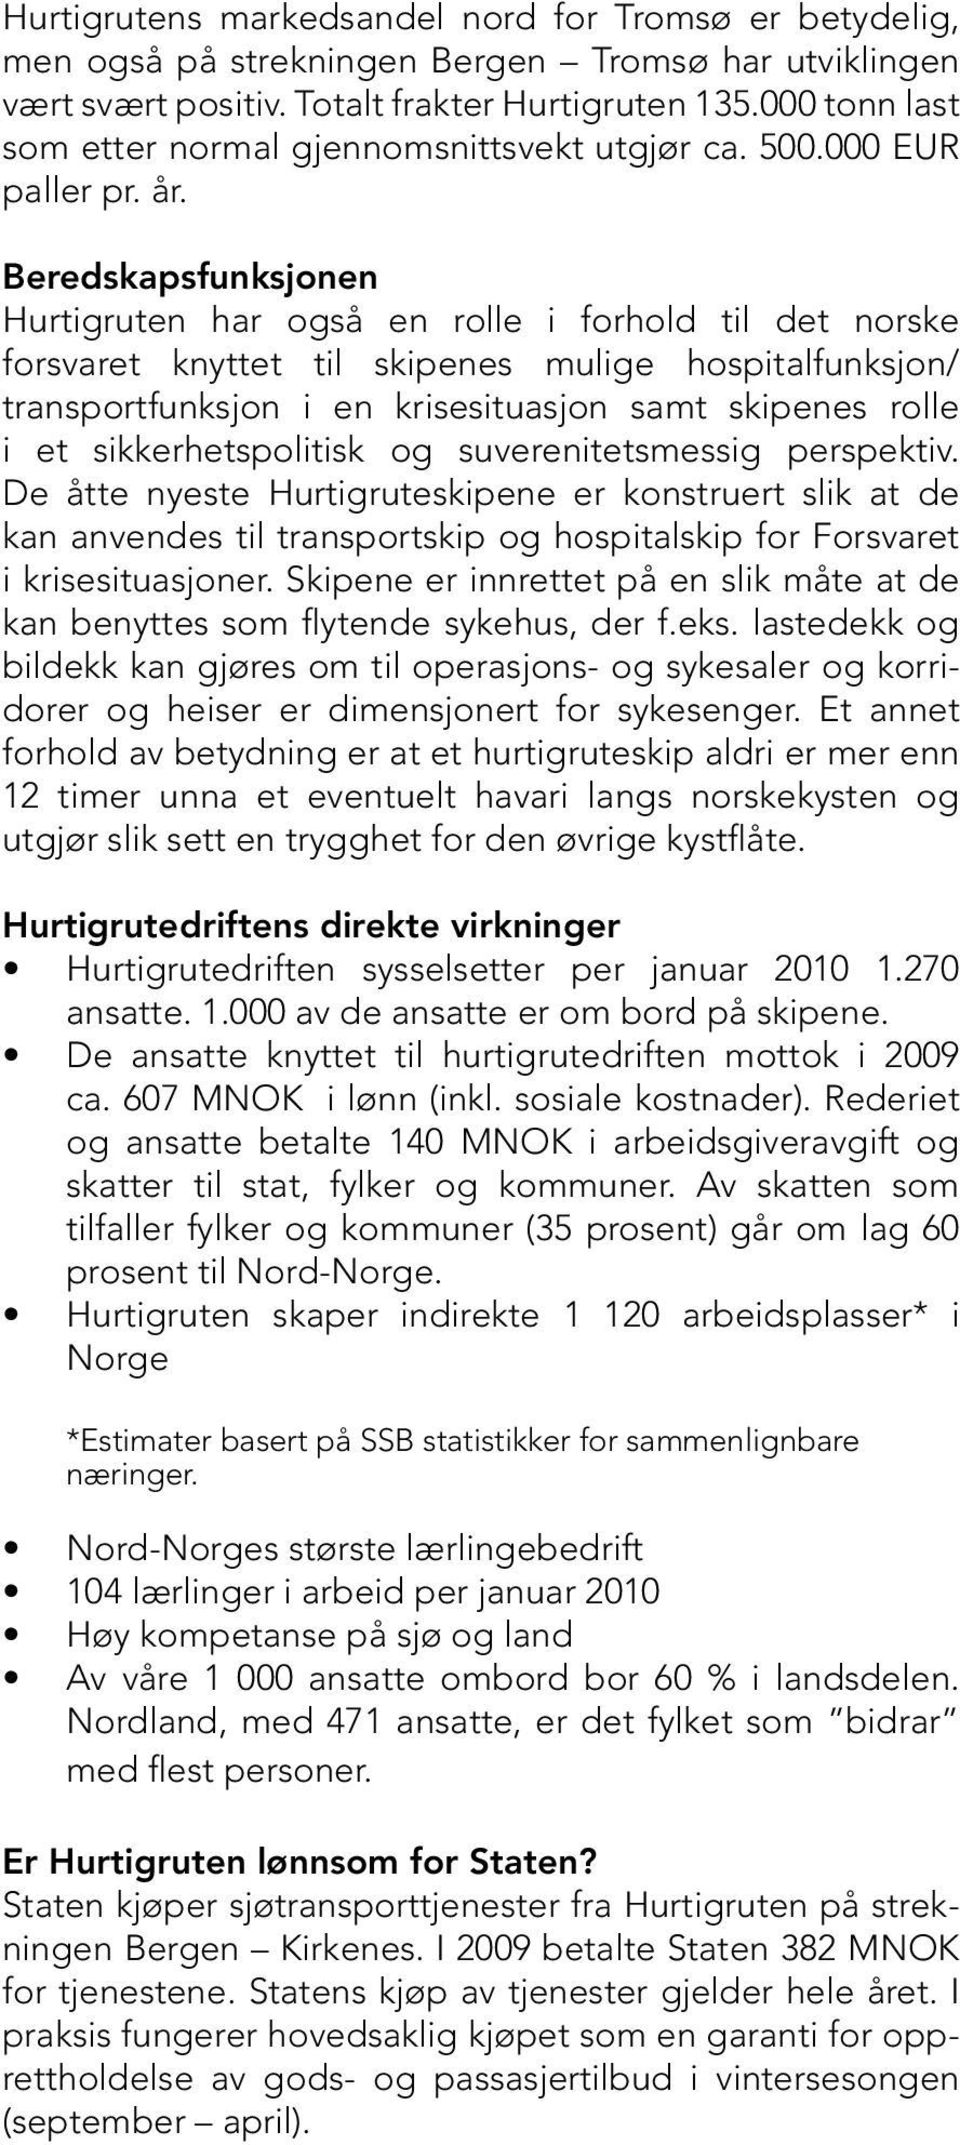 Beredskapsfunksjonen Hurtigruten har også en rolle i forhold til det norske forsvaret knyttet til skipenes mulige hospitalfunksjon/ transportfunksjon i en krisesituasjon samt skipenes rolle i et